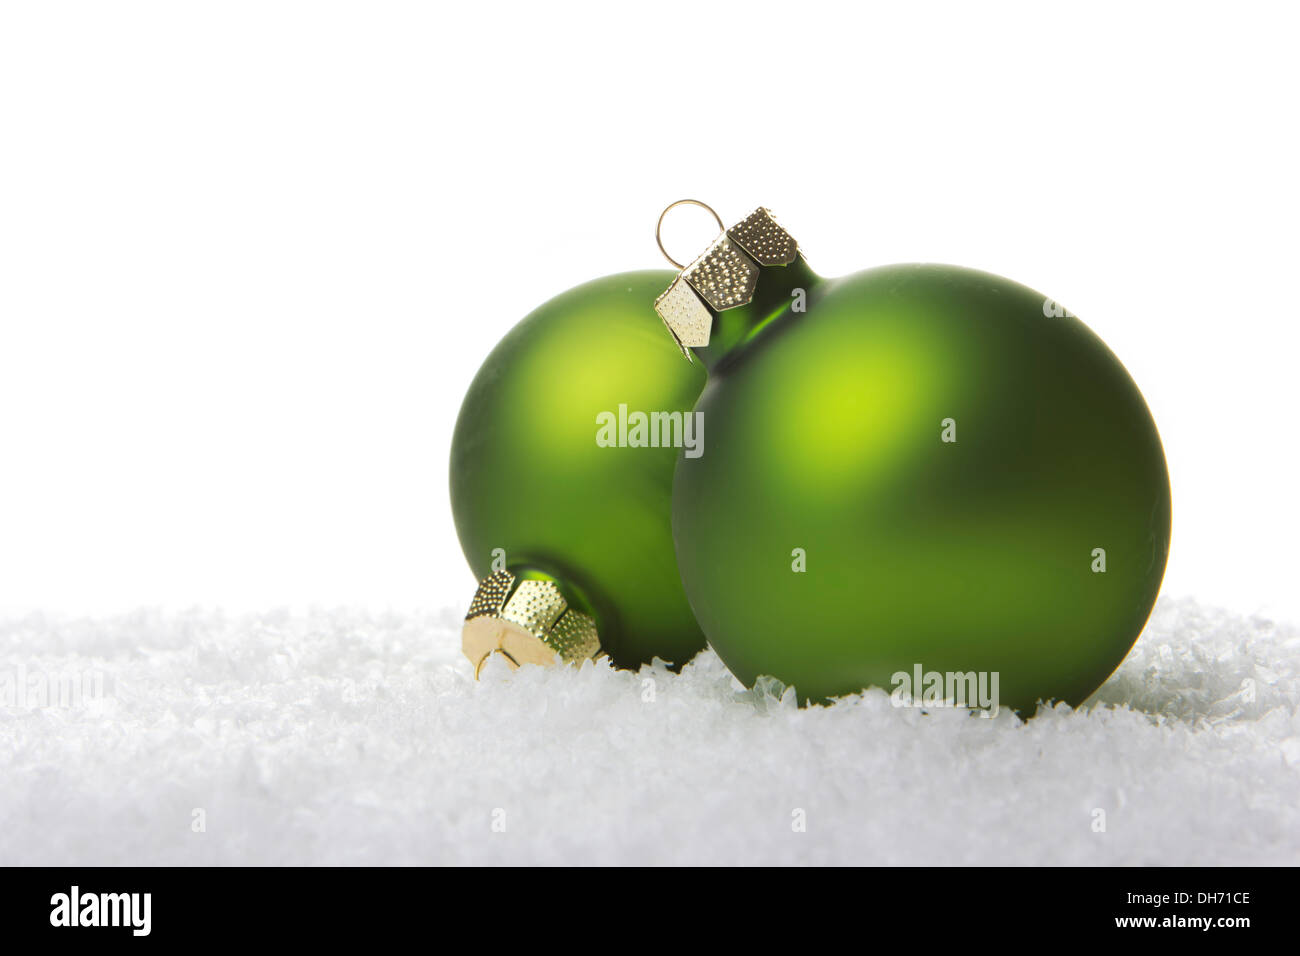 Navidad, verde navidad bolas de nieve artificial con fondo blanco. Foto de stock